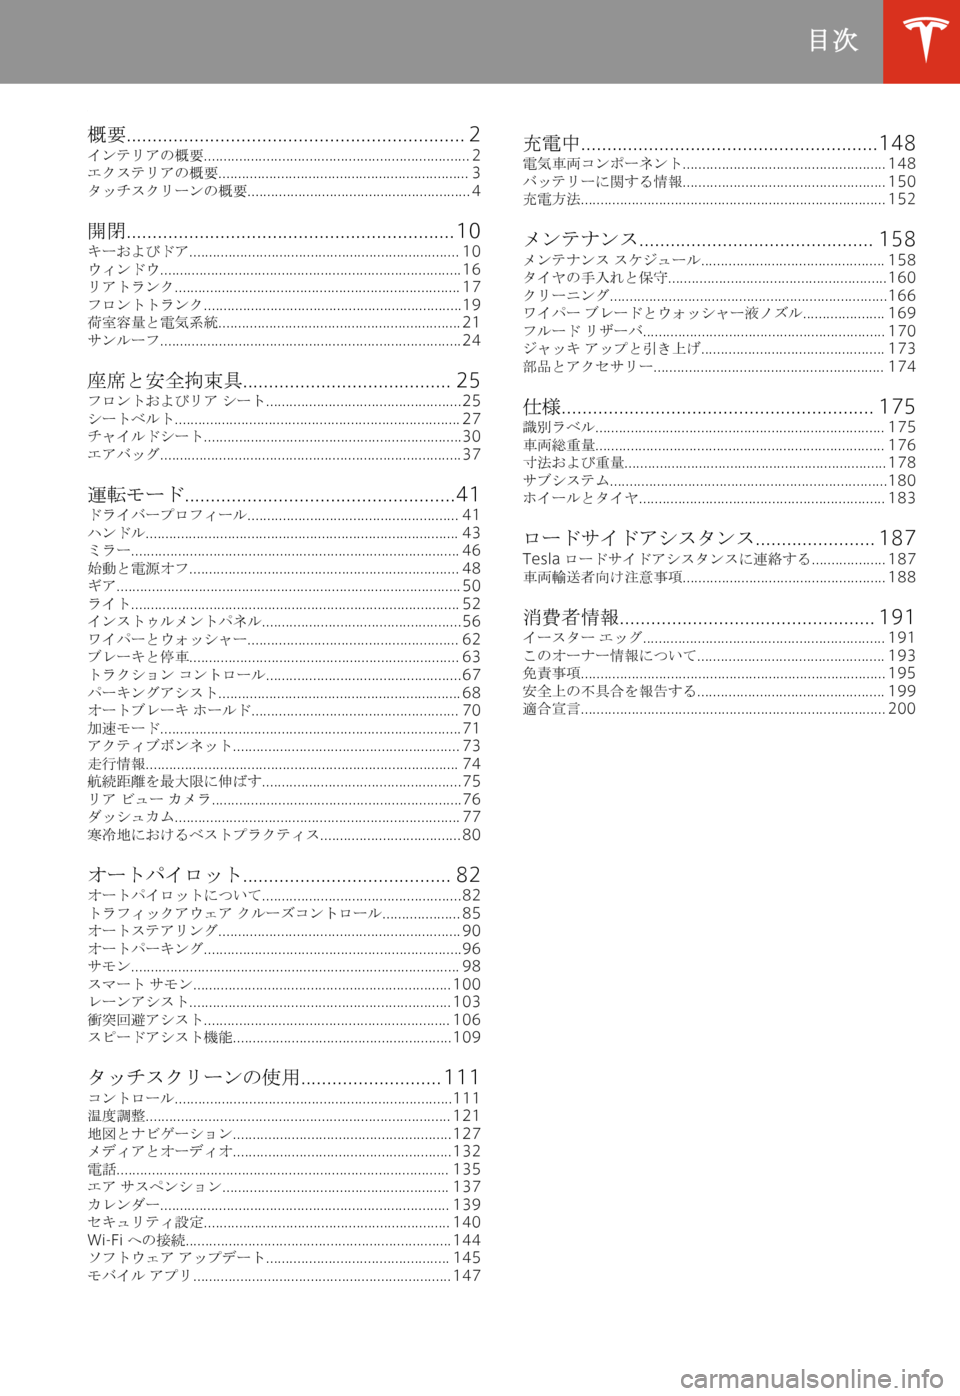 TESLA MODEL S 2020  取扱説明書 (in Japanese) % 
+0[ �.�.�.�.�.�.�.�.�.�.�.�.�.�.�.�.�.�.�.�.�.�.�.�.�.�.�.�.�.�.�.�.�.�.�.�.�.�.�.�.�.�.�.�.�.�.�.�.�.�.�.�.�.�.�.�.�.�.�.�.�.�.�.�.�. �2
